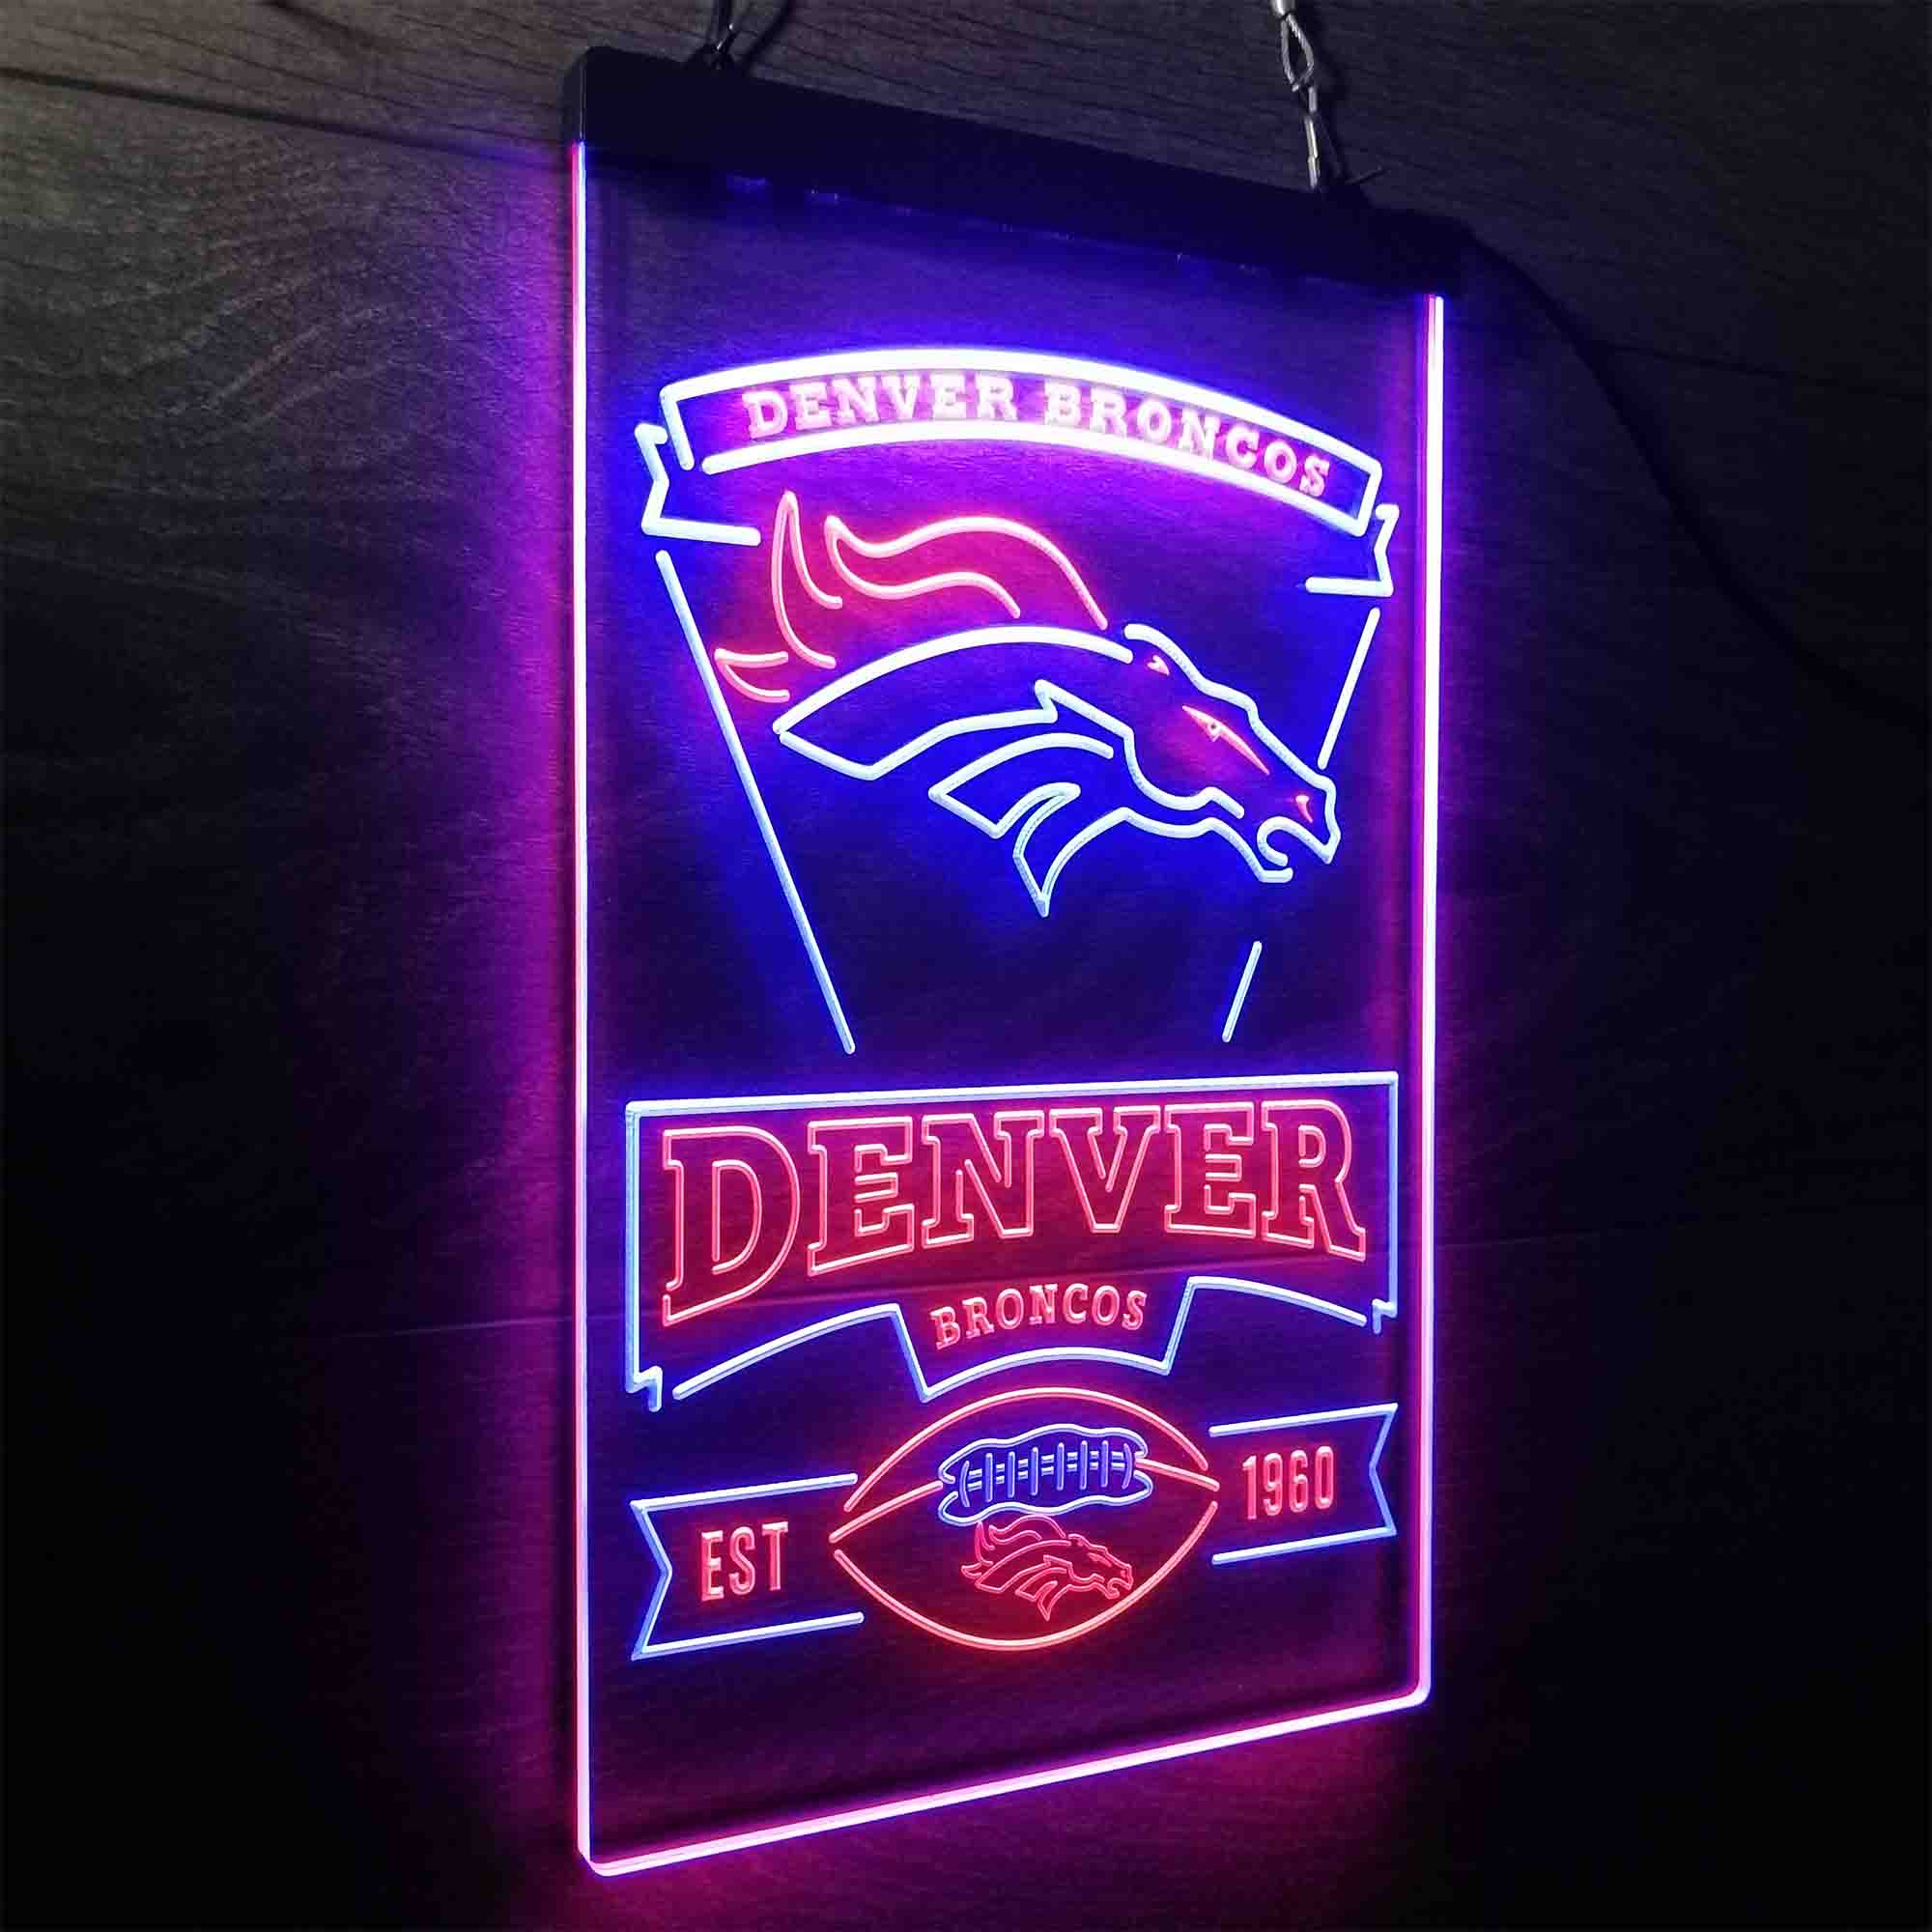 Denver Broncos Est. 1960 LED Neon Sign